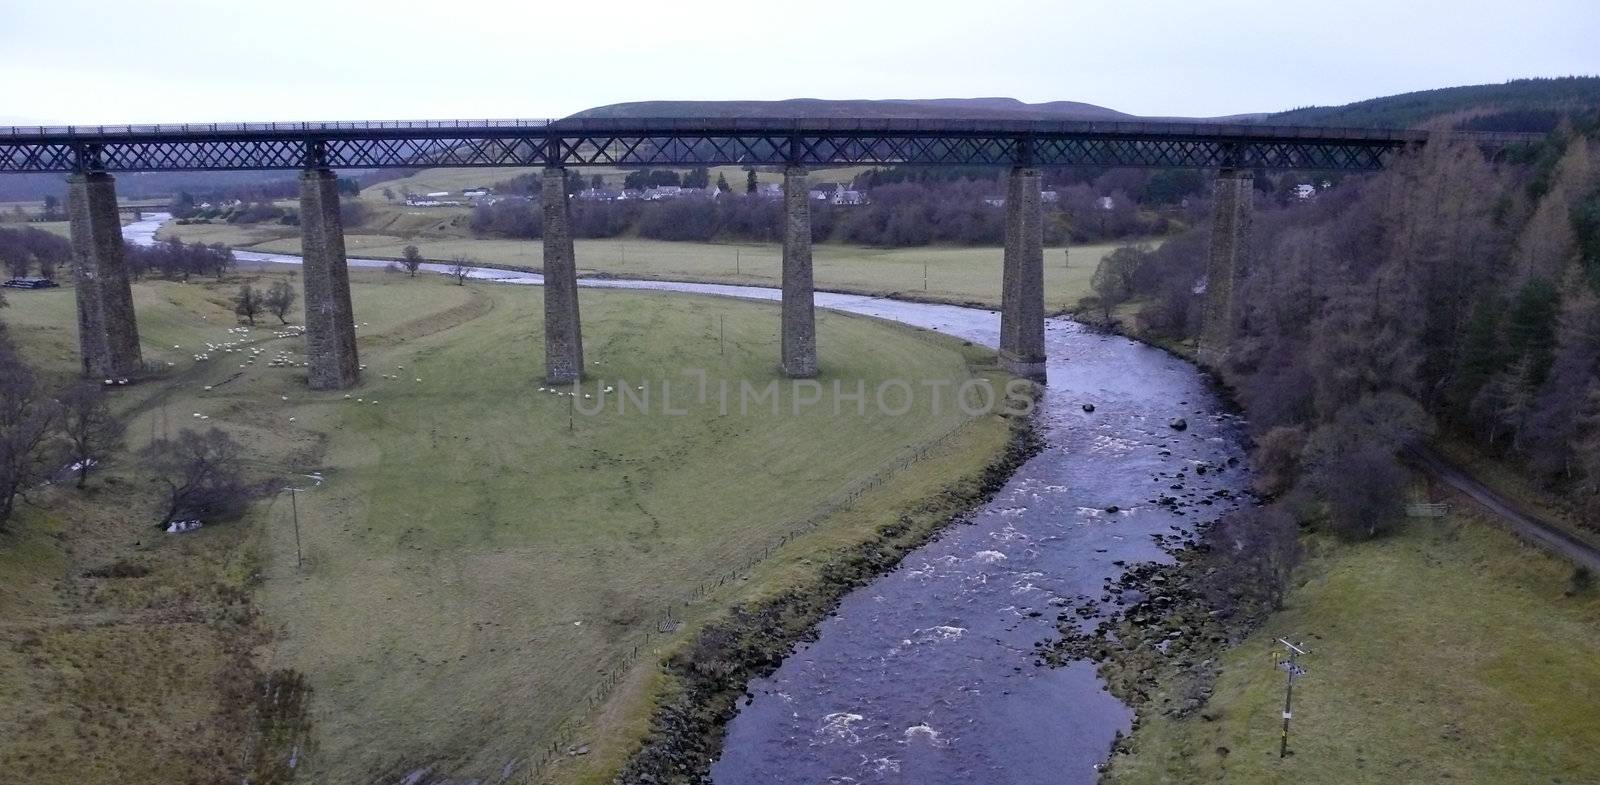 bridg over river by medsofoto